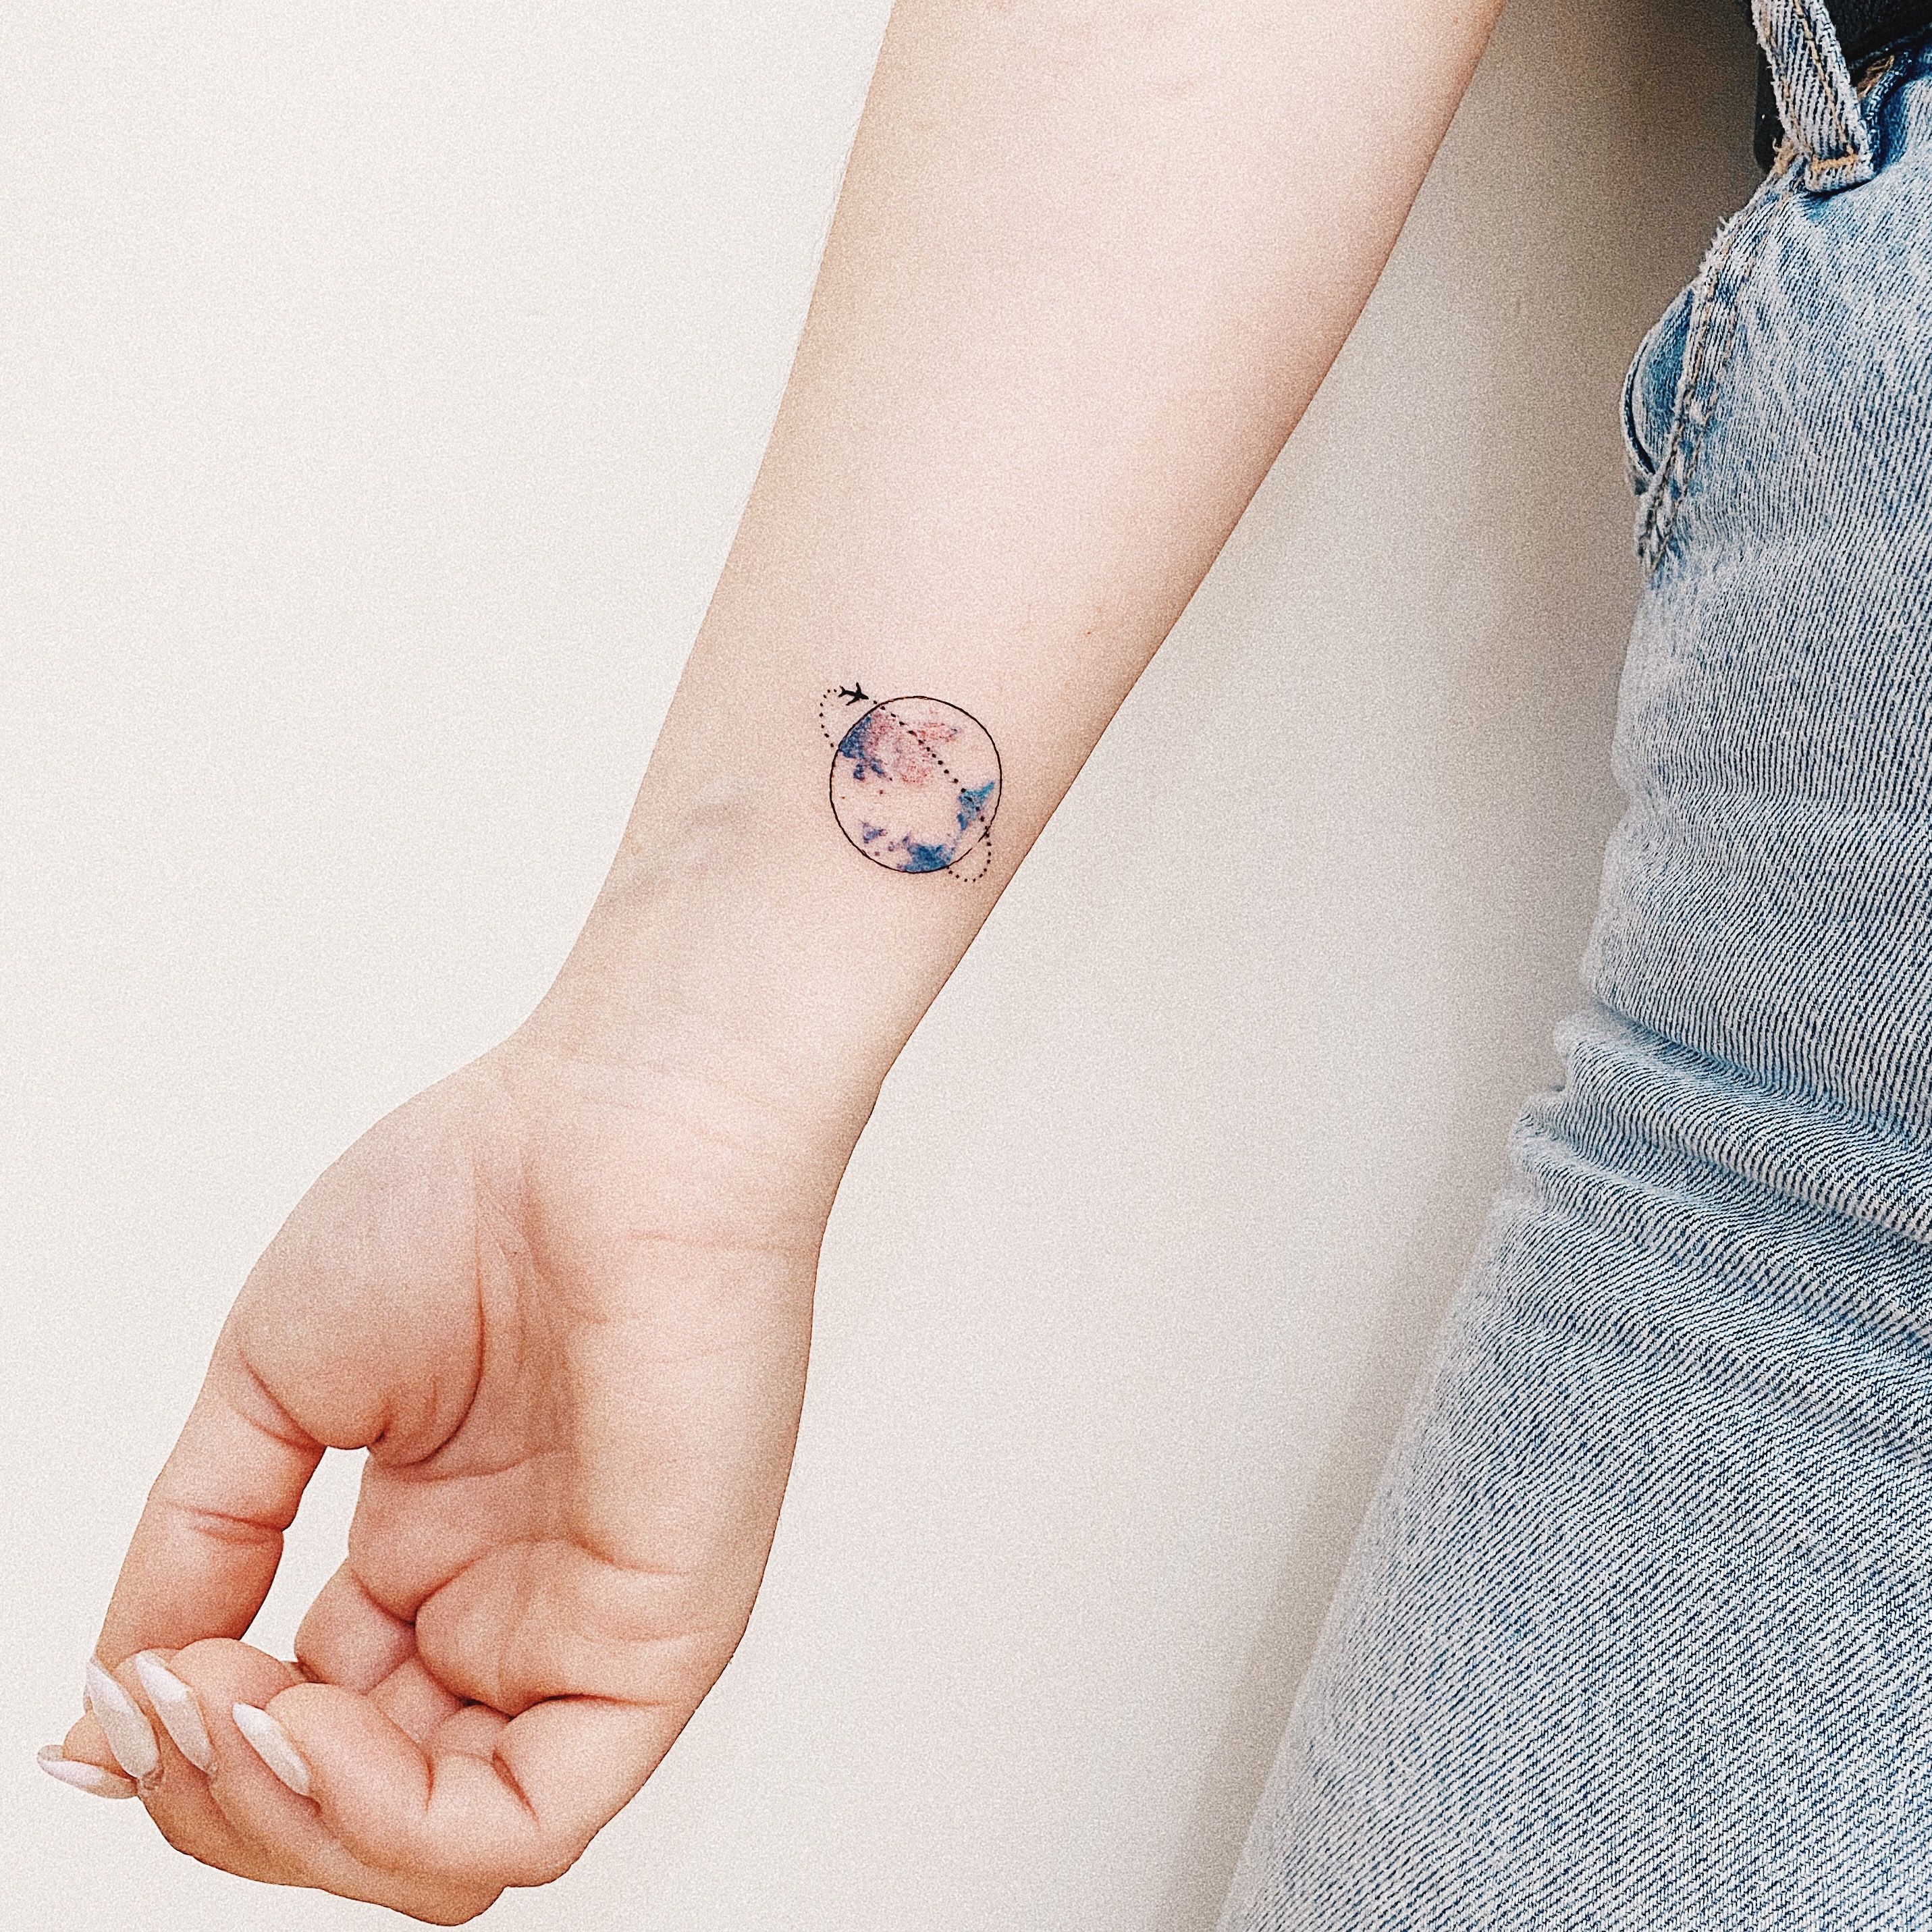 26 Best Planet Tattoo ideas | planet tattoos, tattoos, earth tattoo